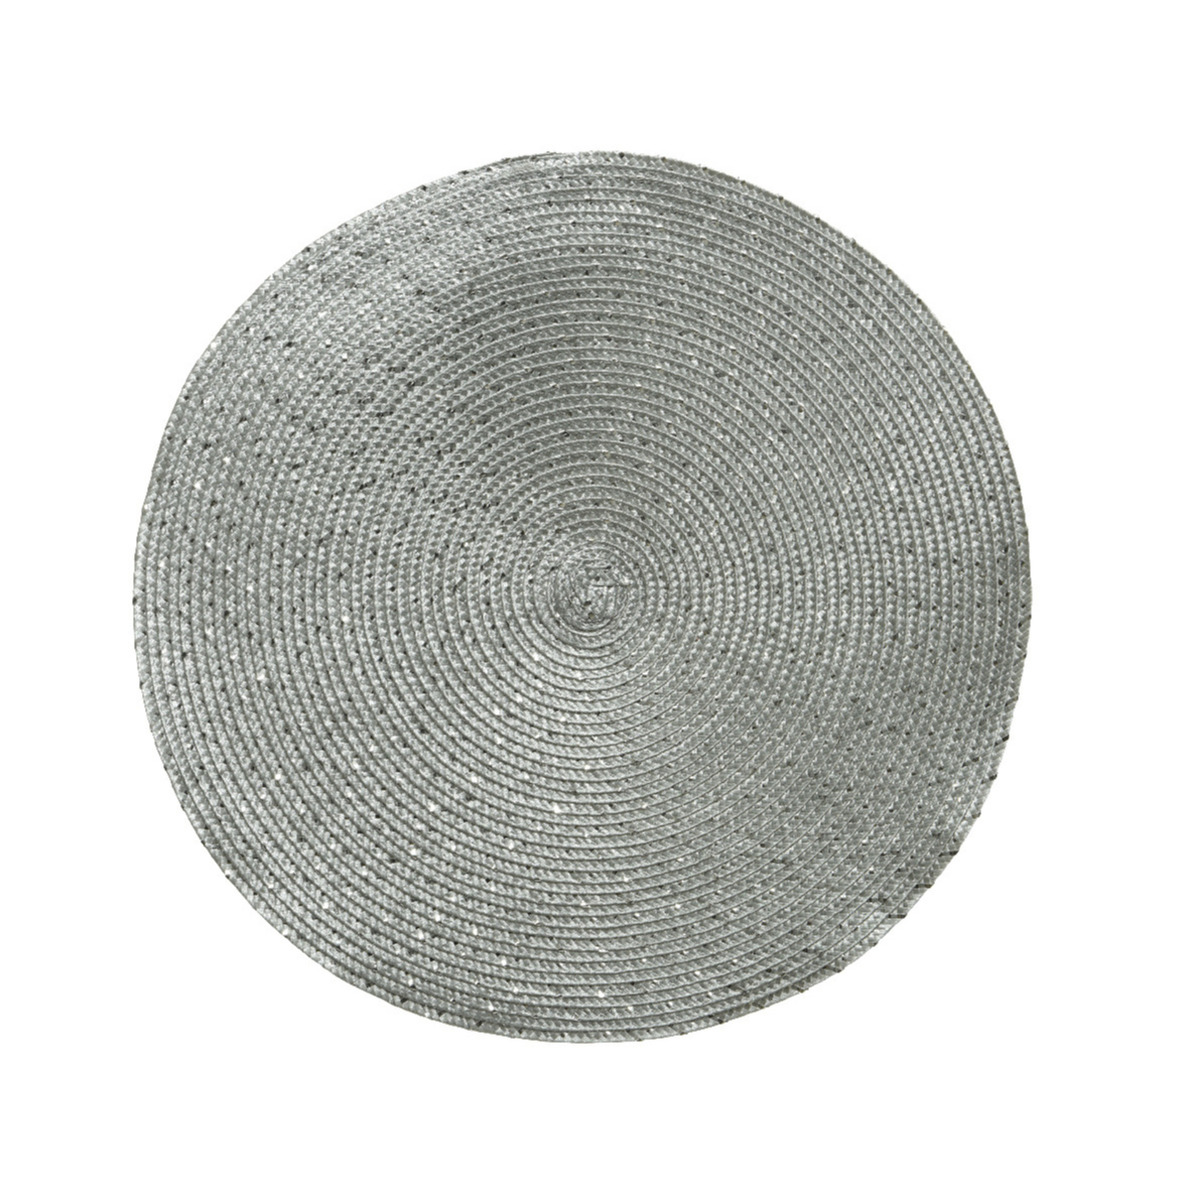 1x stuks ronde placemats zilver 38 cm van kunststof